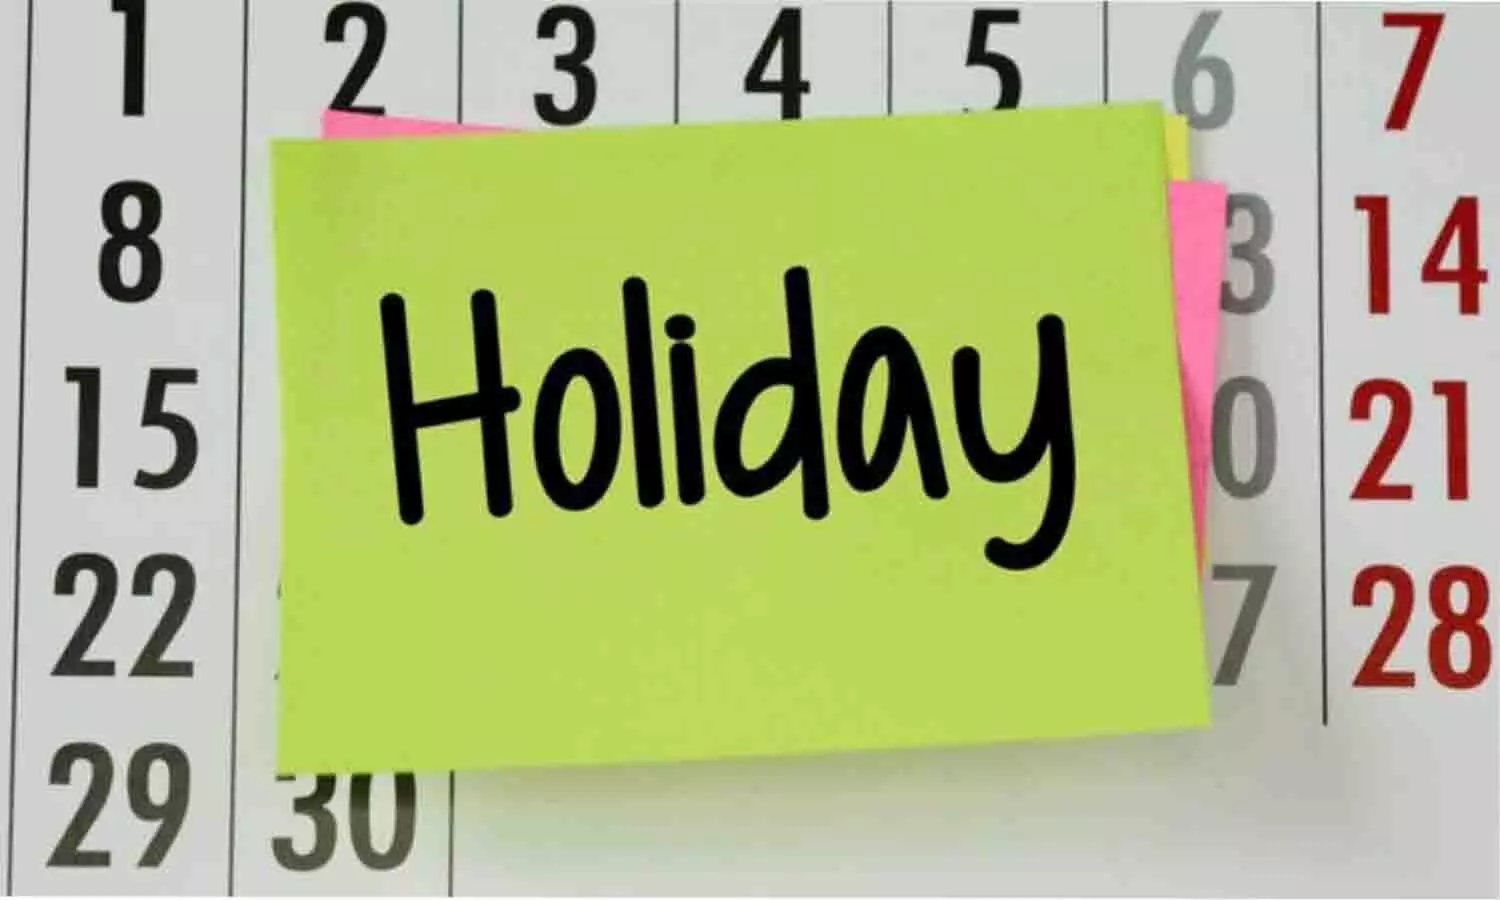 UP School Holiday: उत्तर प्रदेश में स्कूल की छुट्टी को लेकर बड़ा अपडेट, जानिये